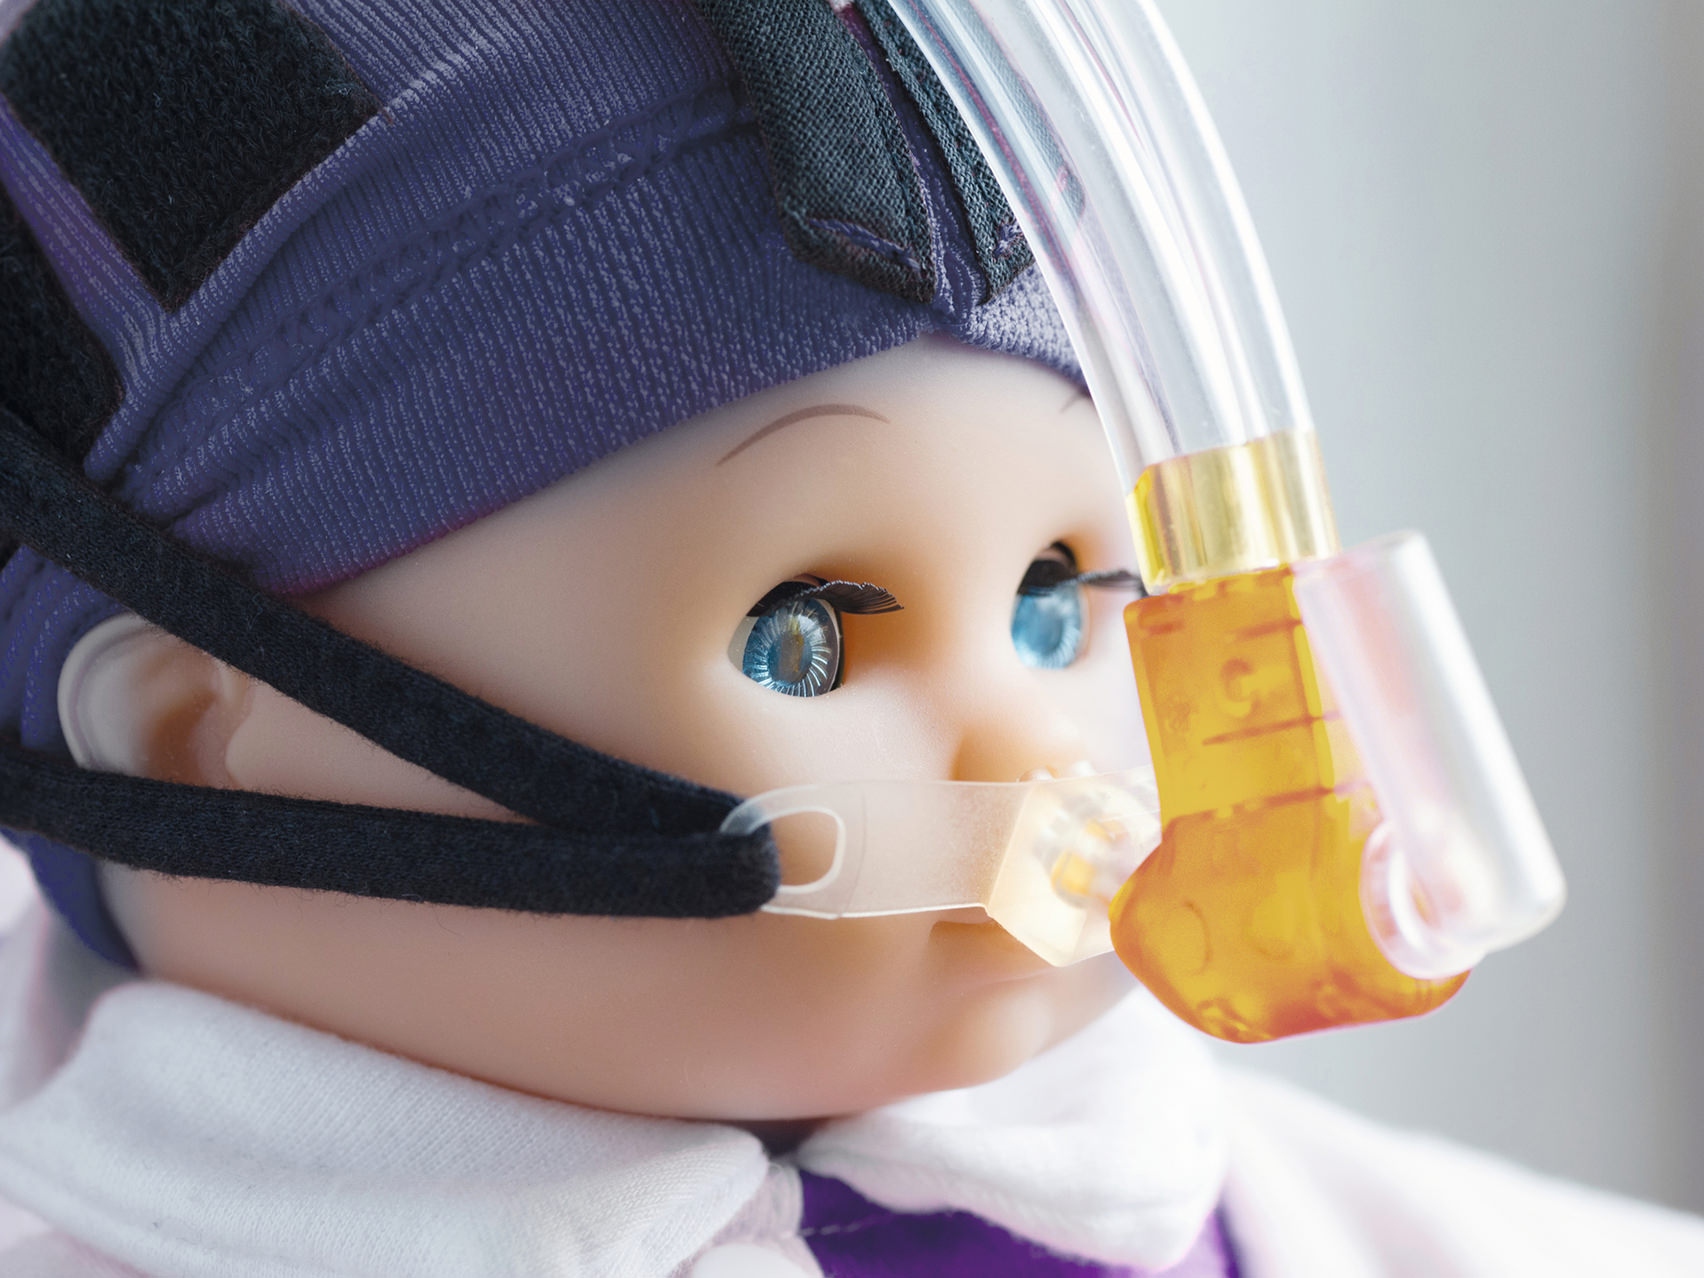 Vista ampliada do rosto de uma boneca a usar uma máscara respiratória.